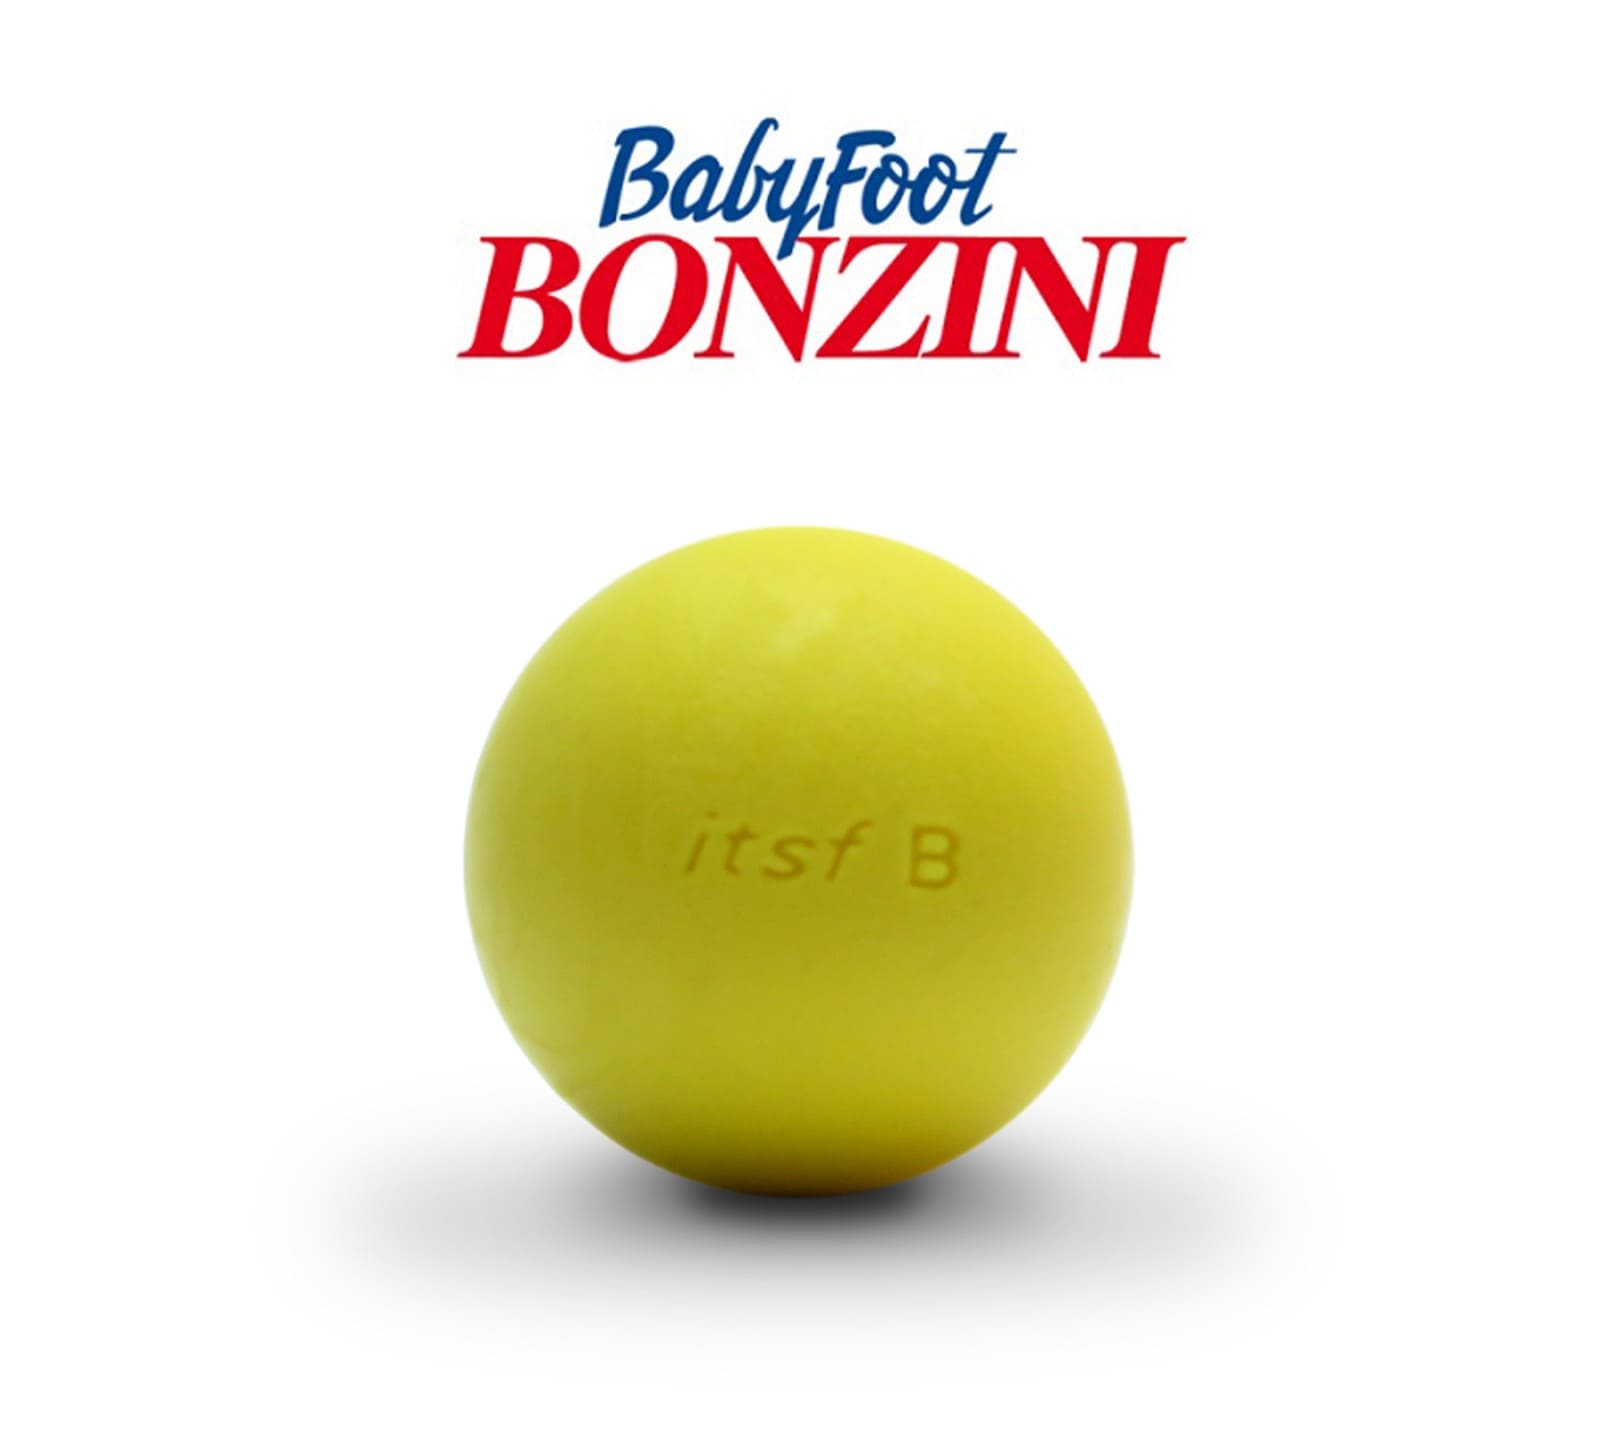 Balle officiel itsf-B compétition Bonzini